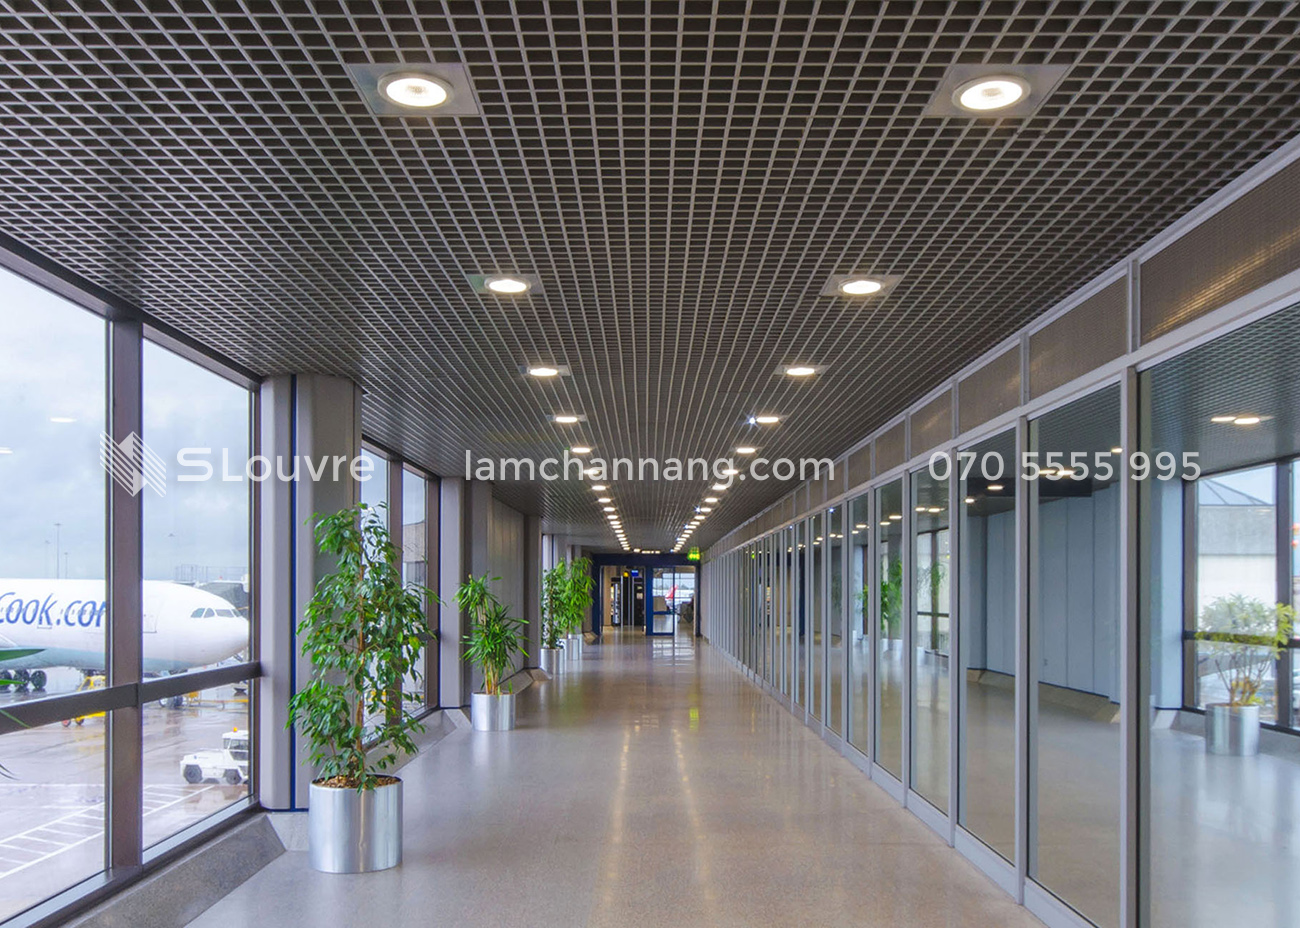 tran-nhom-san-bay-airport-aluminium-ceiling-5